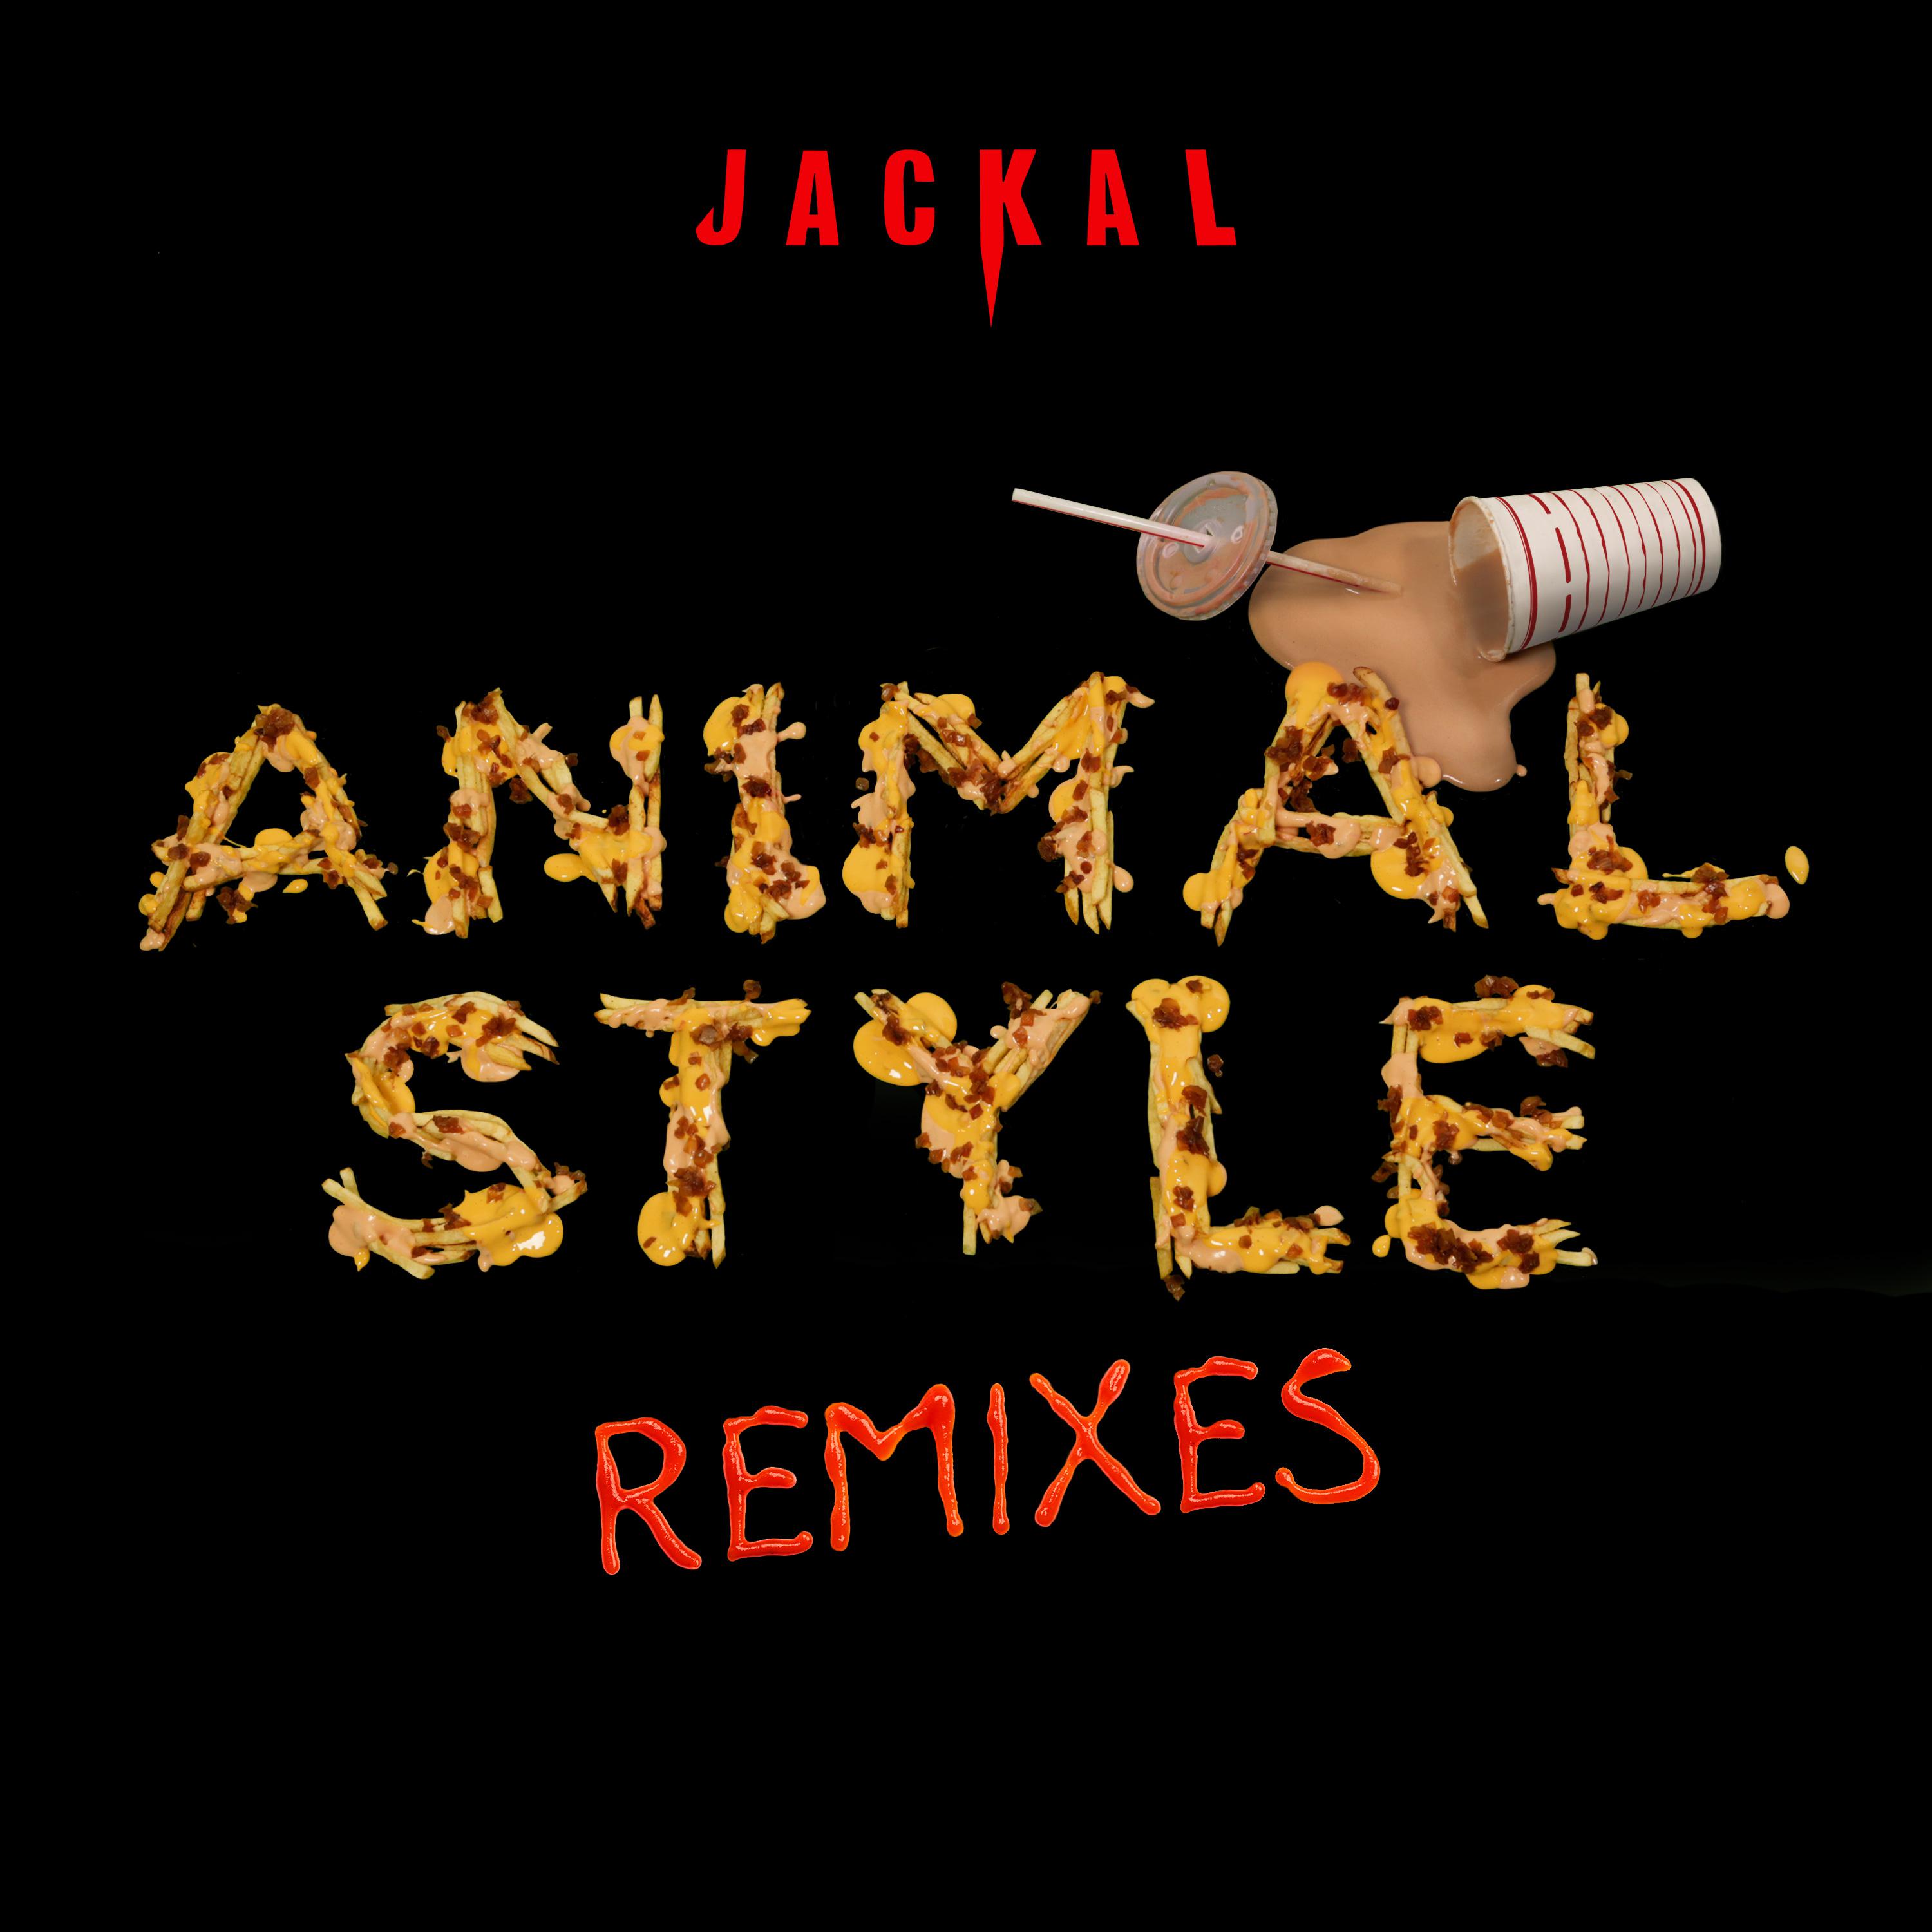 Animal Style (Remixes)专辑